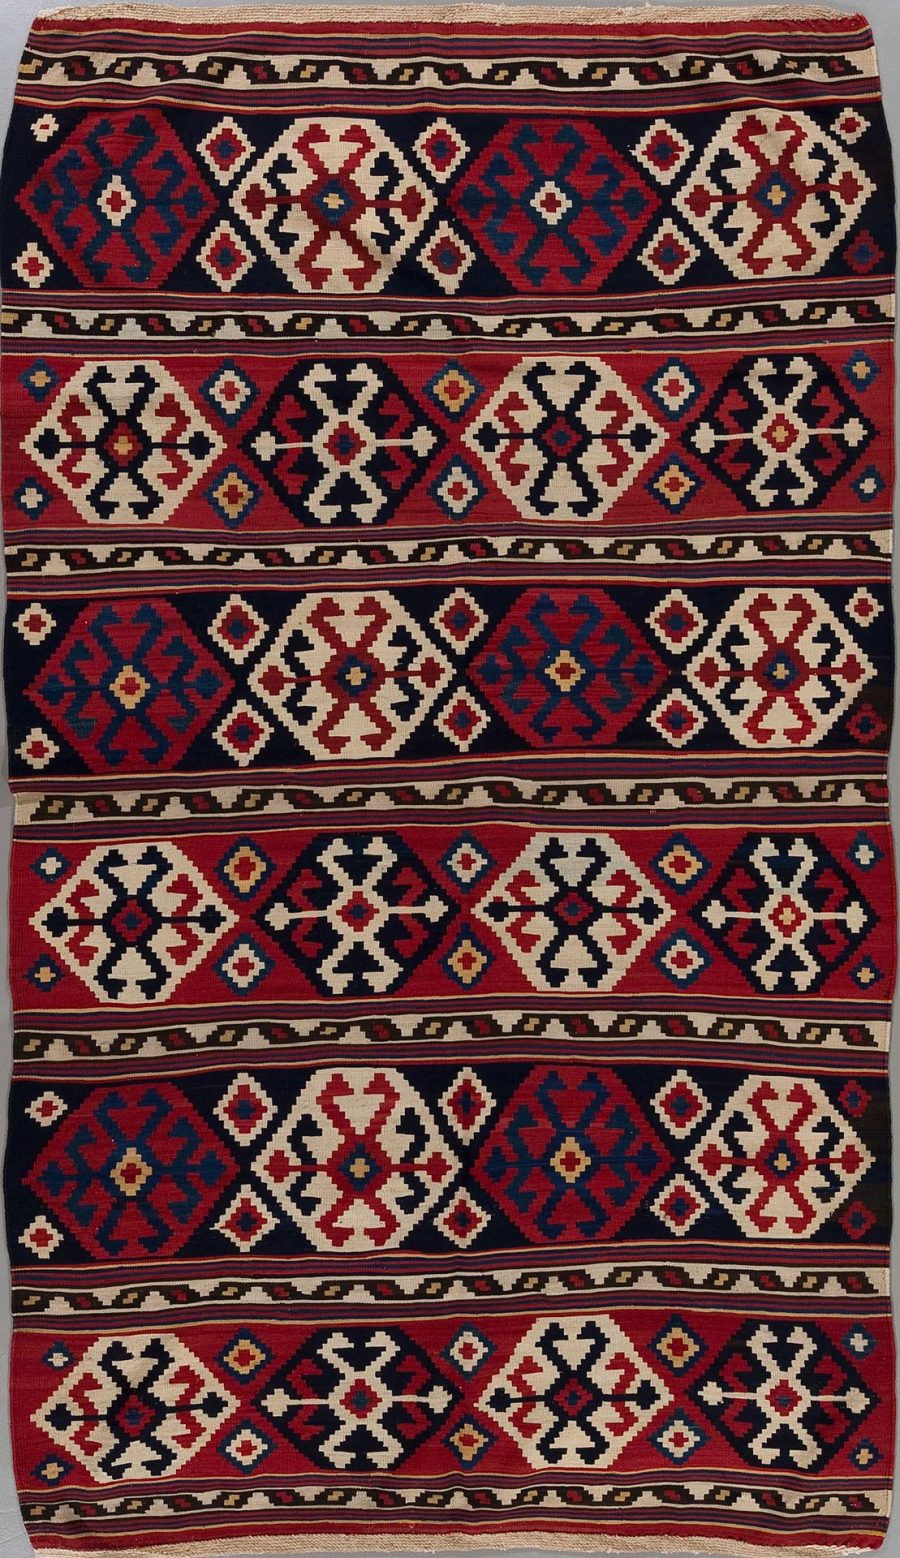 Traditioneller handgewebter Teppich mit wiederholenden geometrischen Mustern und Medaillons in Rot, Blau, Beige und Schwarz.